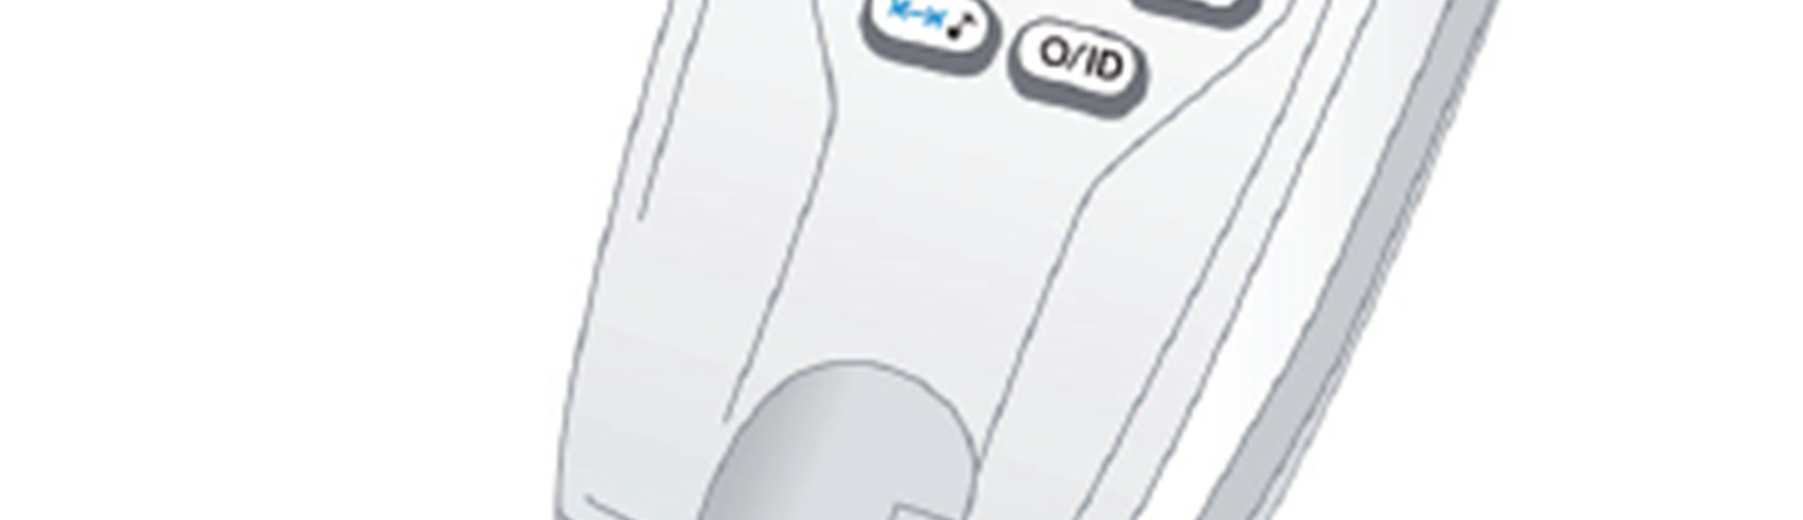 v stopách nebo v metrech Součástí CableMaster jsou dálkové identifikátory pro lokalizaci kabelu k nástěnné zásuvce Výsledky testu kabelu se zobrazují ve formě schématu zapojení s čísly drátů na